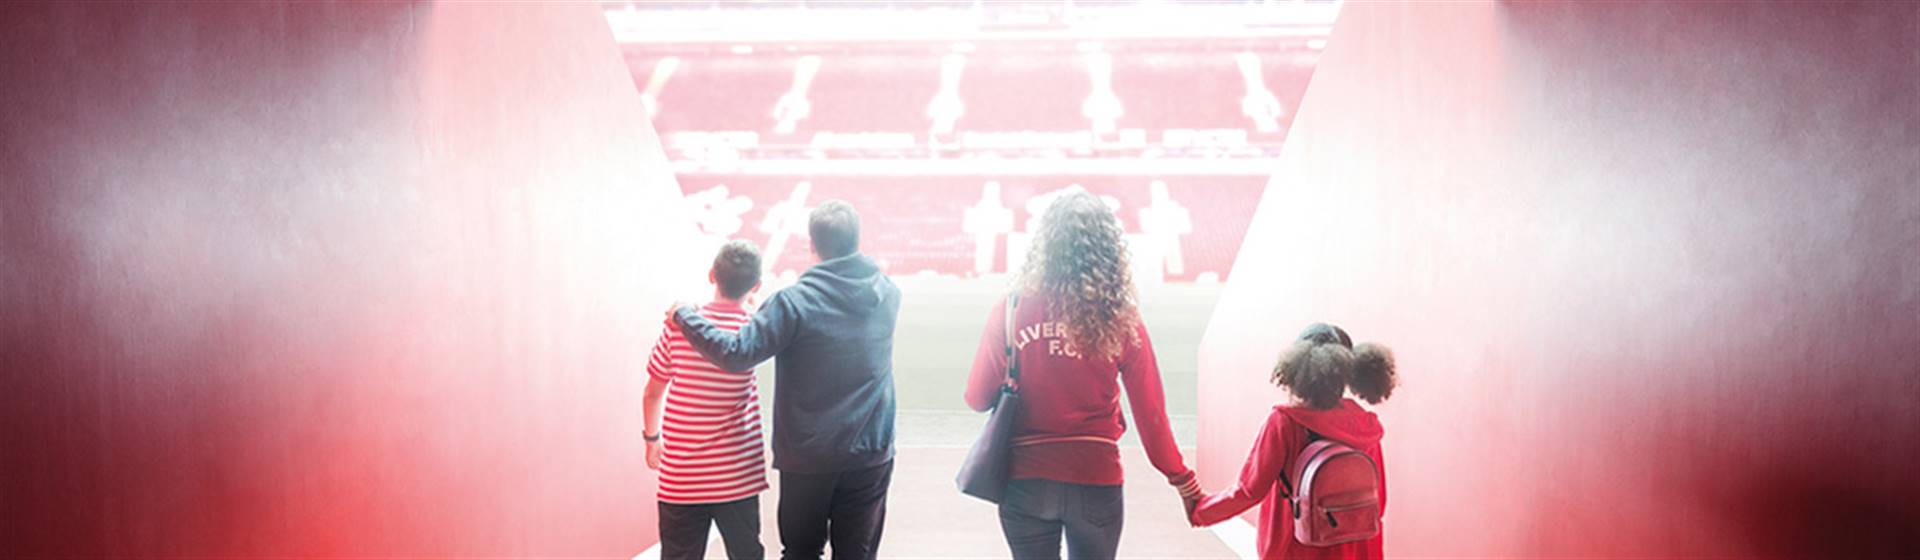 Liverpool FC Stadium Tour